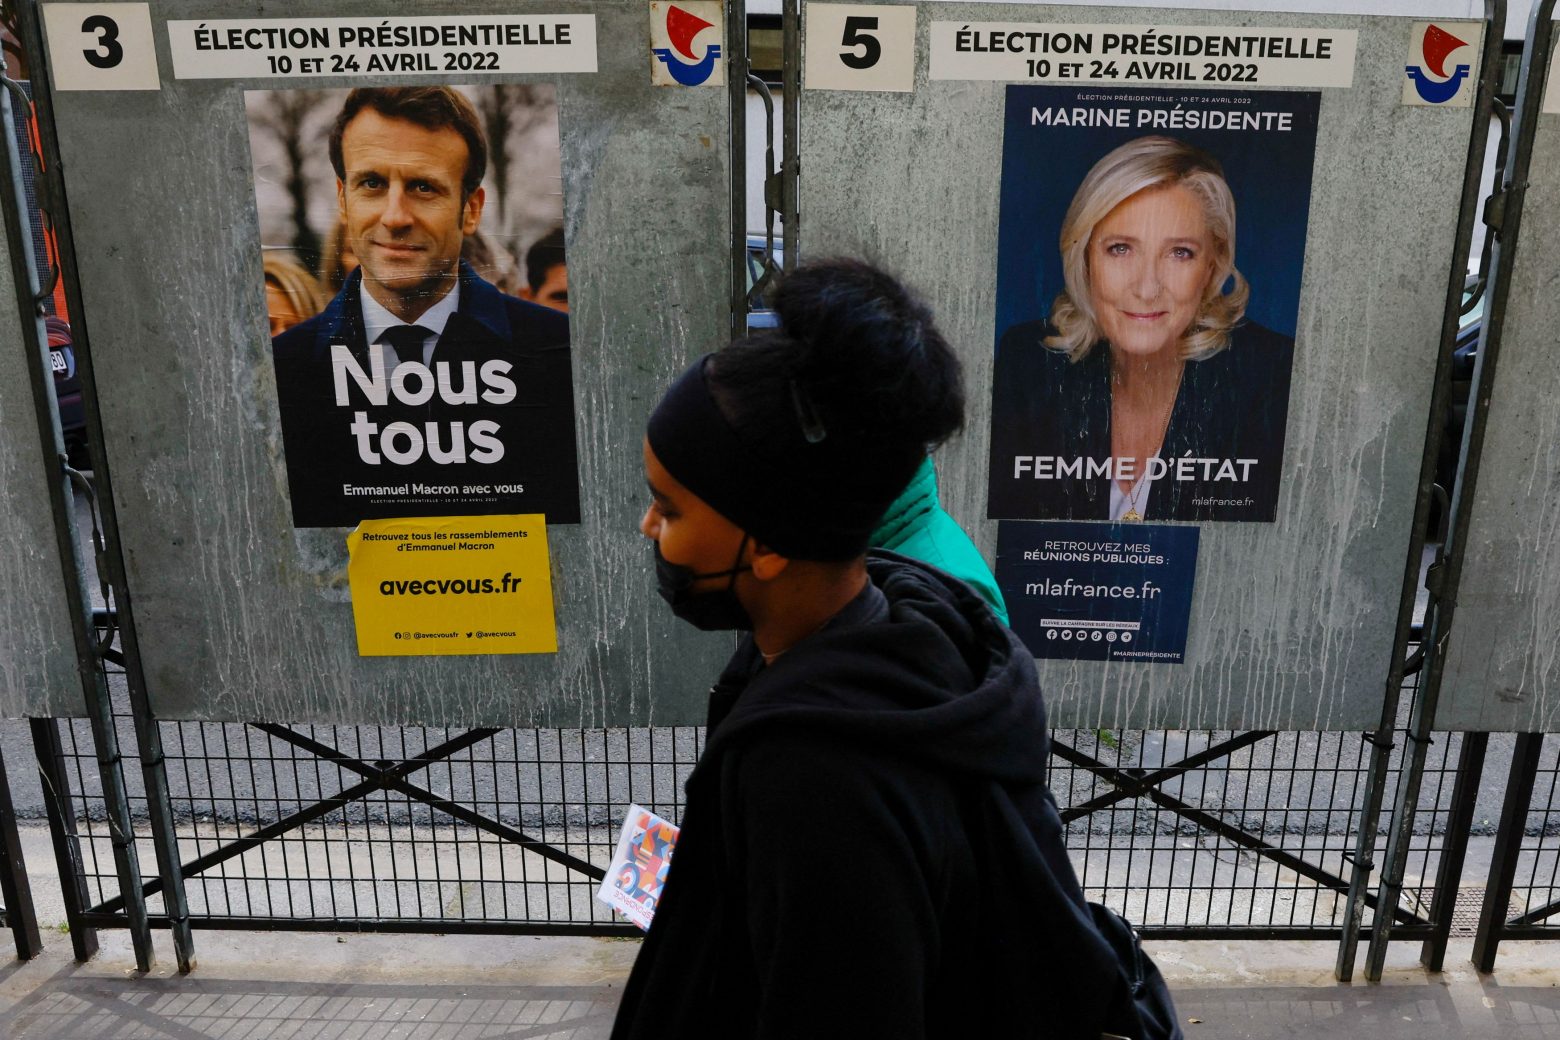 Εκλογές στην Γαλλία: «Δεν είναι ξεκάθαρη η έκβαση των εκλογών» λέει ο πρωθυπουργός της Γαλλίας